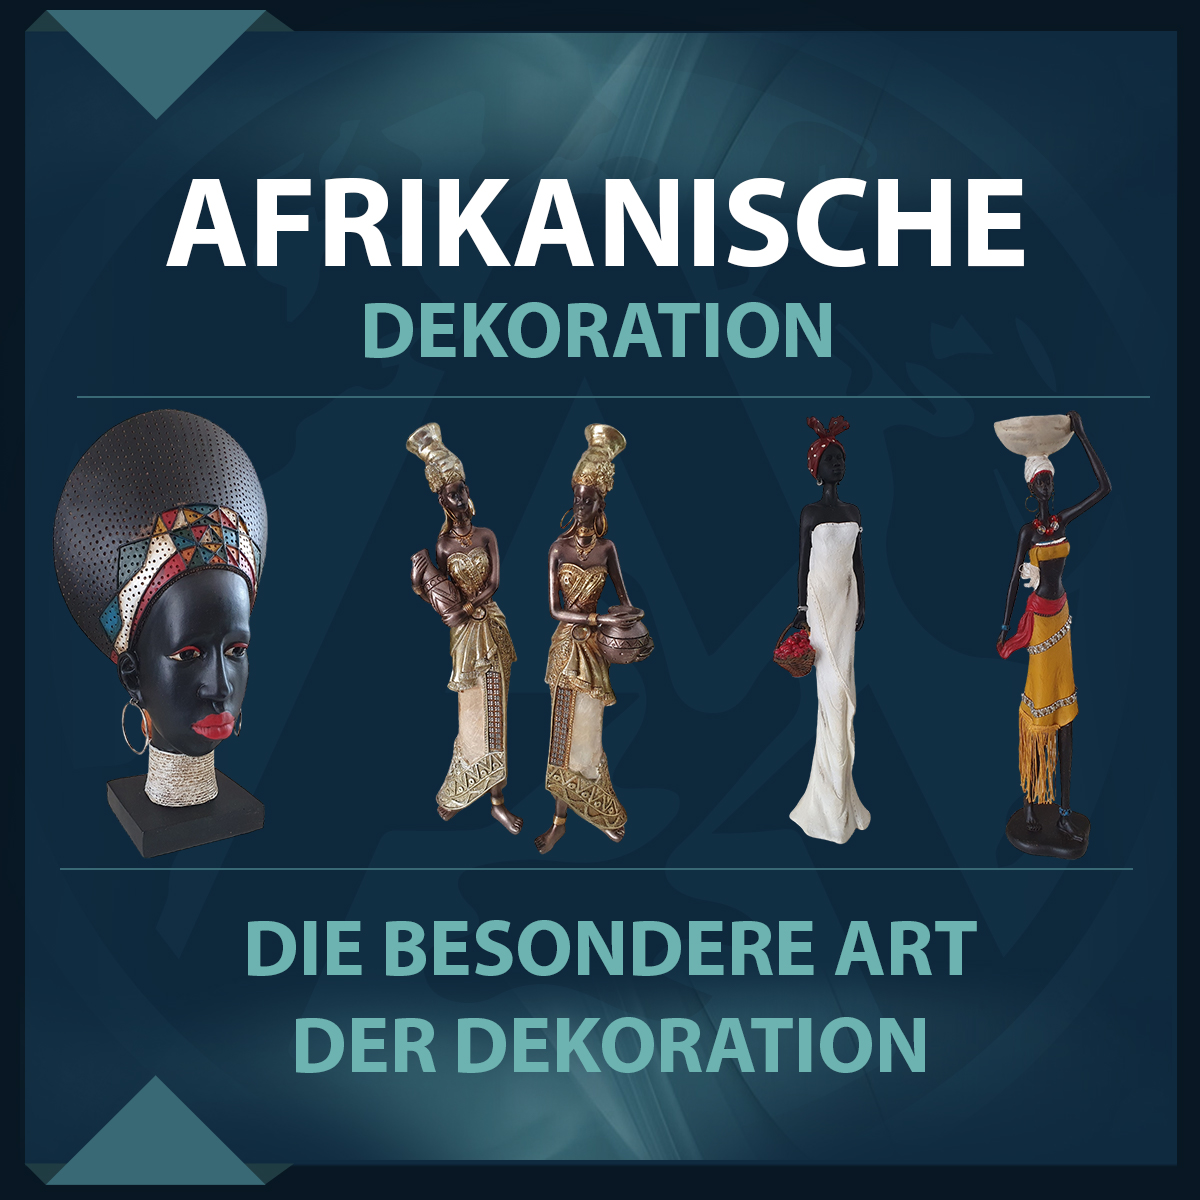 Entdecken Sie afrikanische Dekorationen bei Kauf3.com - Vielfältige afrikanische Figuren für Ihre Wohn- und Gartenideen. Perfekte Ergänzung zu unserer Auswahl an Gartenfiguren und Dekoartikeln.